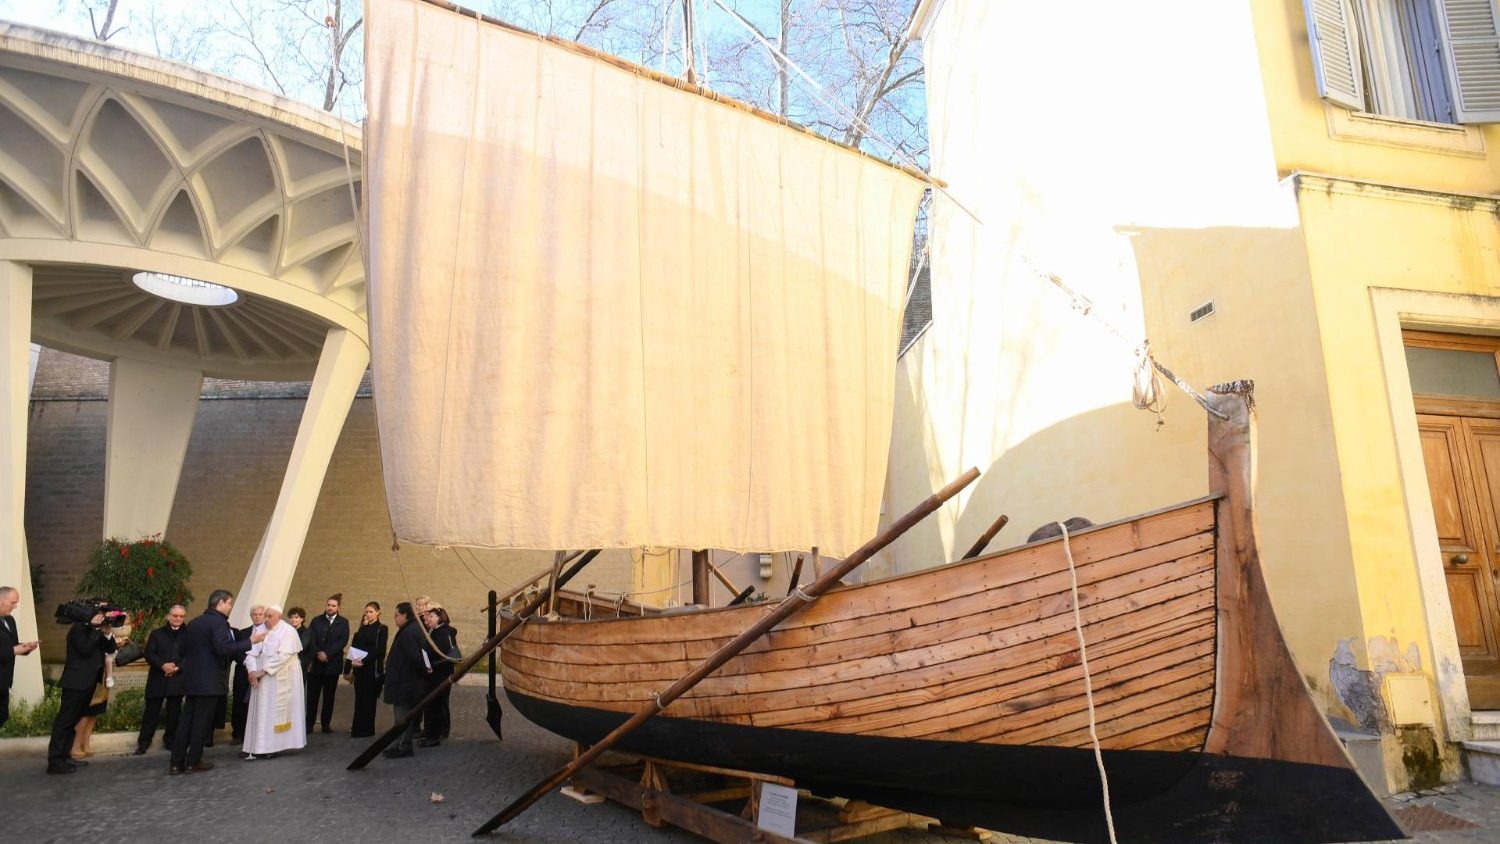 La Barca di Pietro entra nelle collezioni dei Musei Vaticani. Sarà esposta dal 10 ottobre